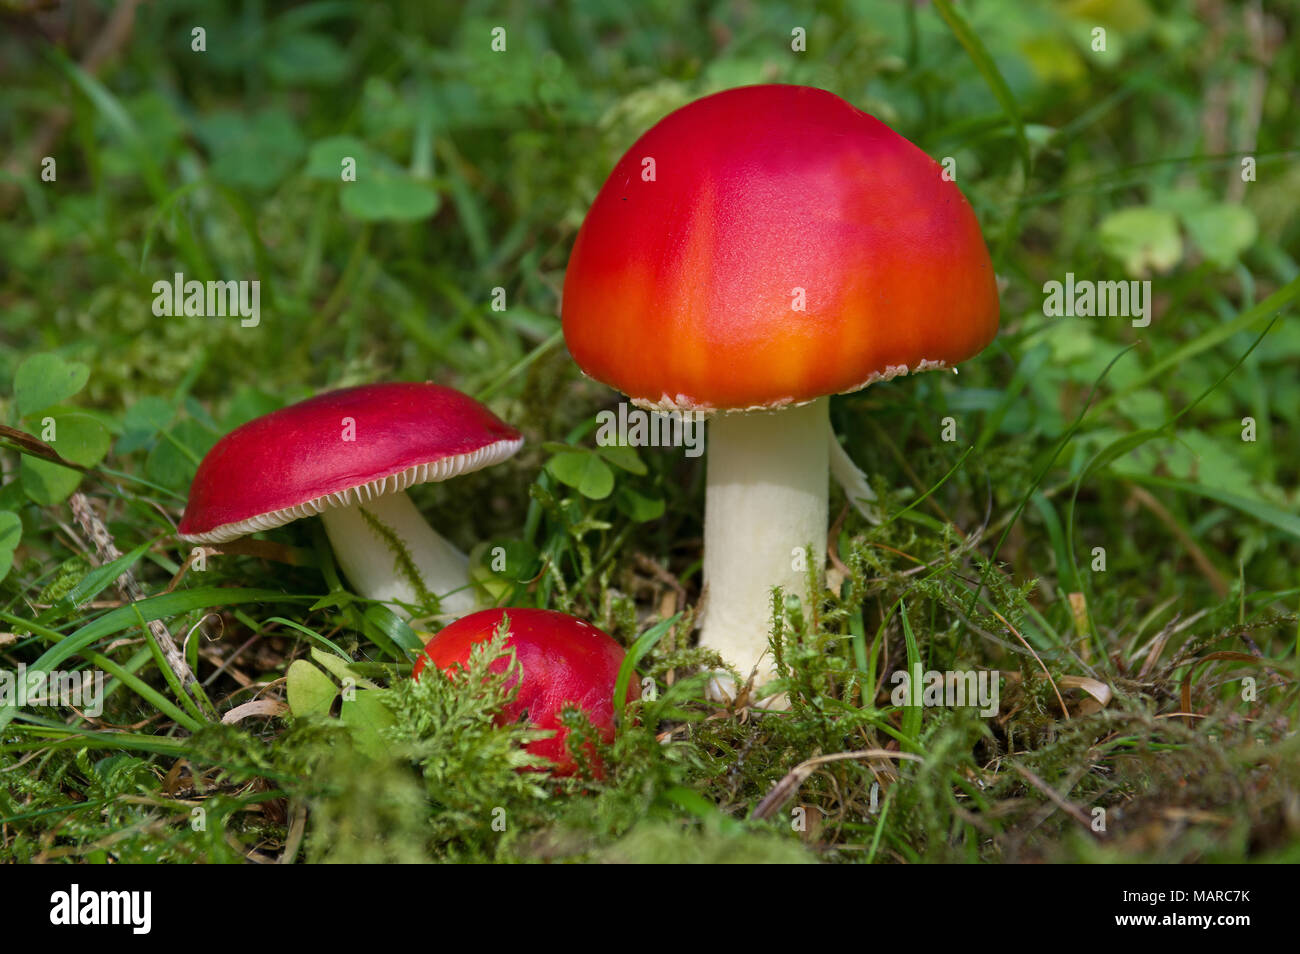 La maggior parte dei funghi rosso un velenoso, quindi prestare attenzione ! In questo caso: Sickener fungo Russula emetico (Russula emetica) a sinistra, Fly Agaric (amanita muscaria) a destra. Germania Foto Stock